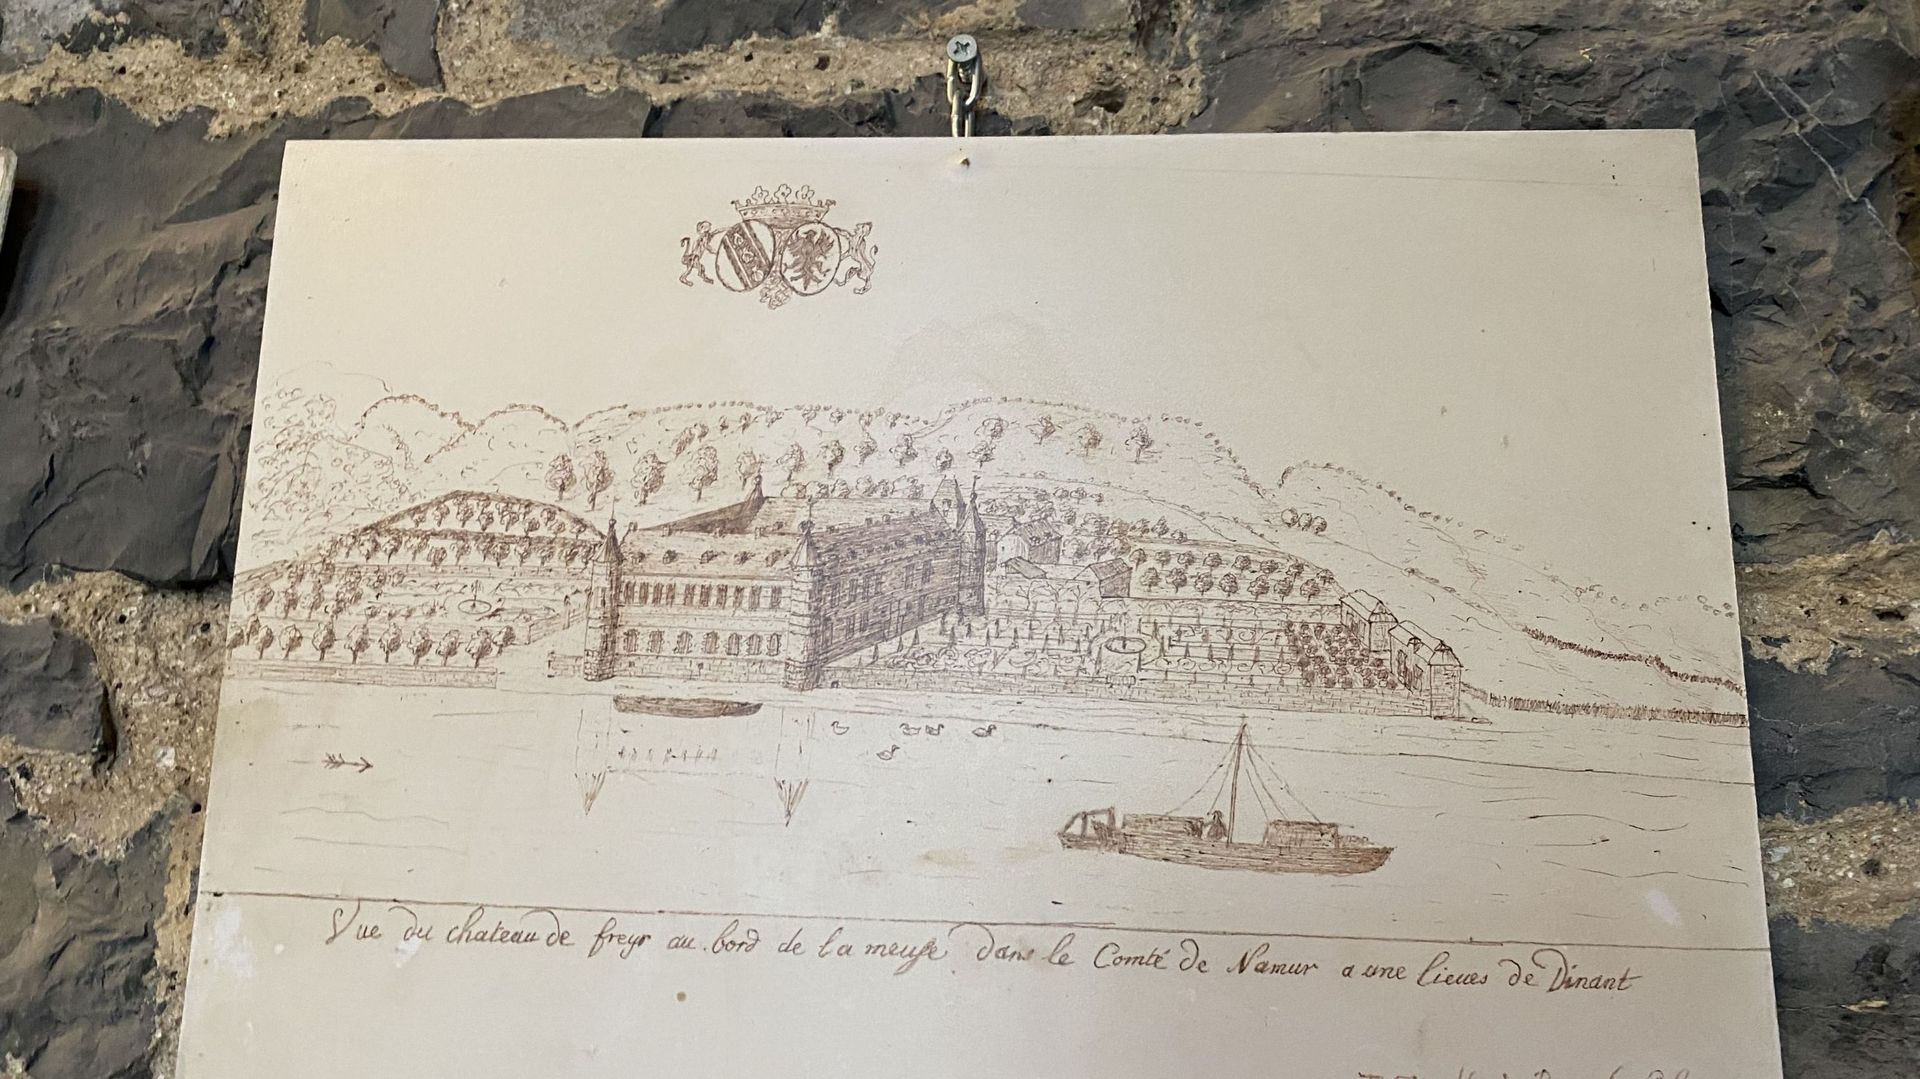 Œuvre exposée dans le pré-accueil du château de Freÿr où l’on peut voir les orangers alignés, regroupés, le long des orangeries, à droite